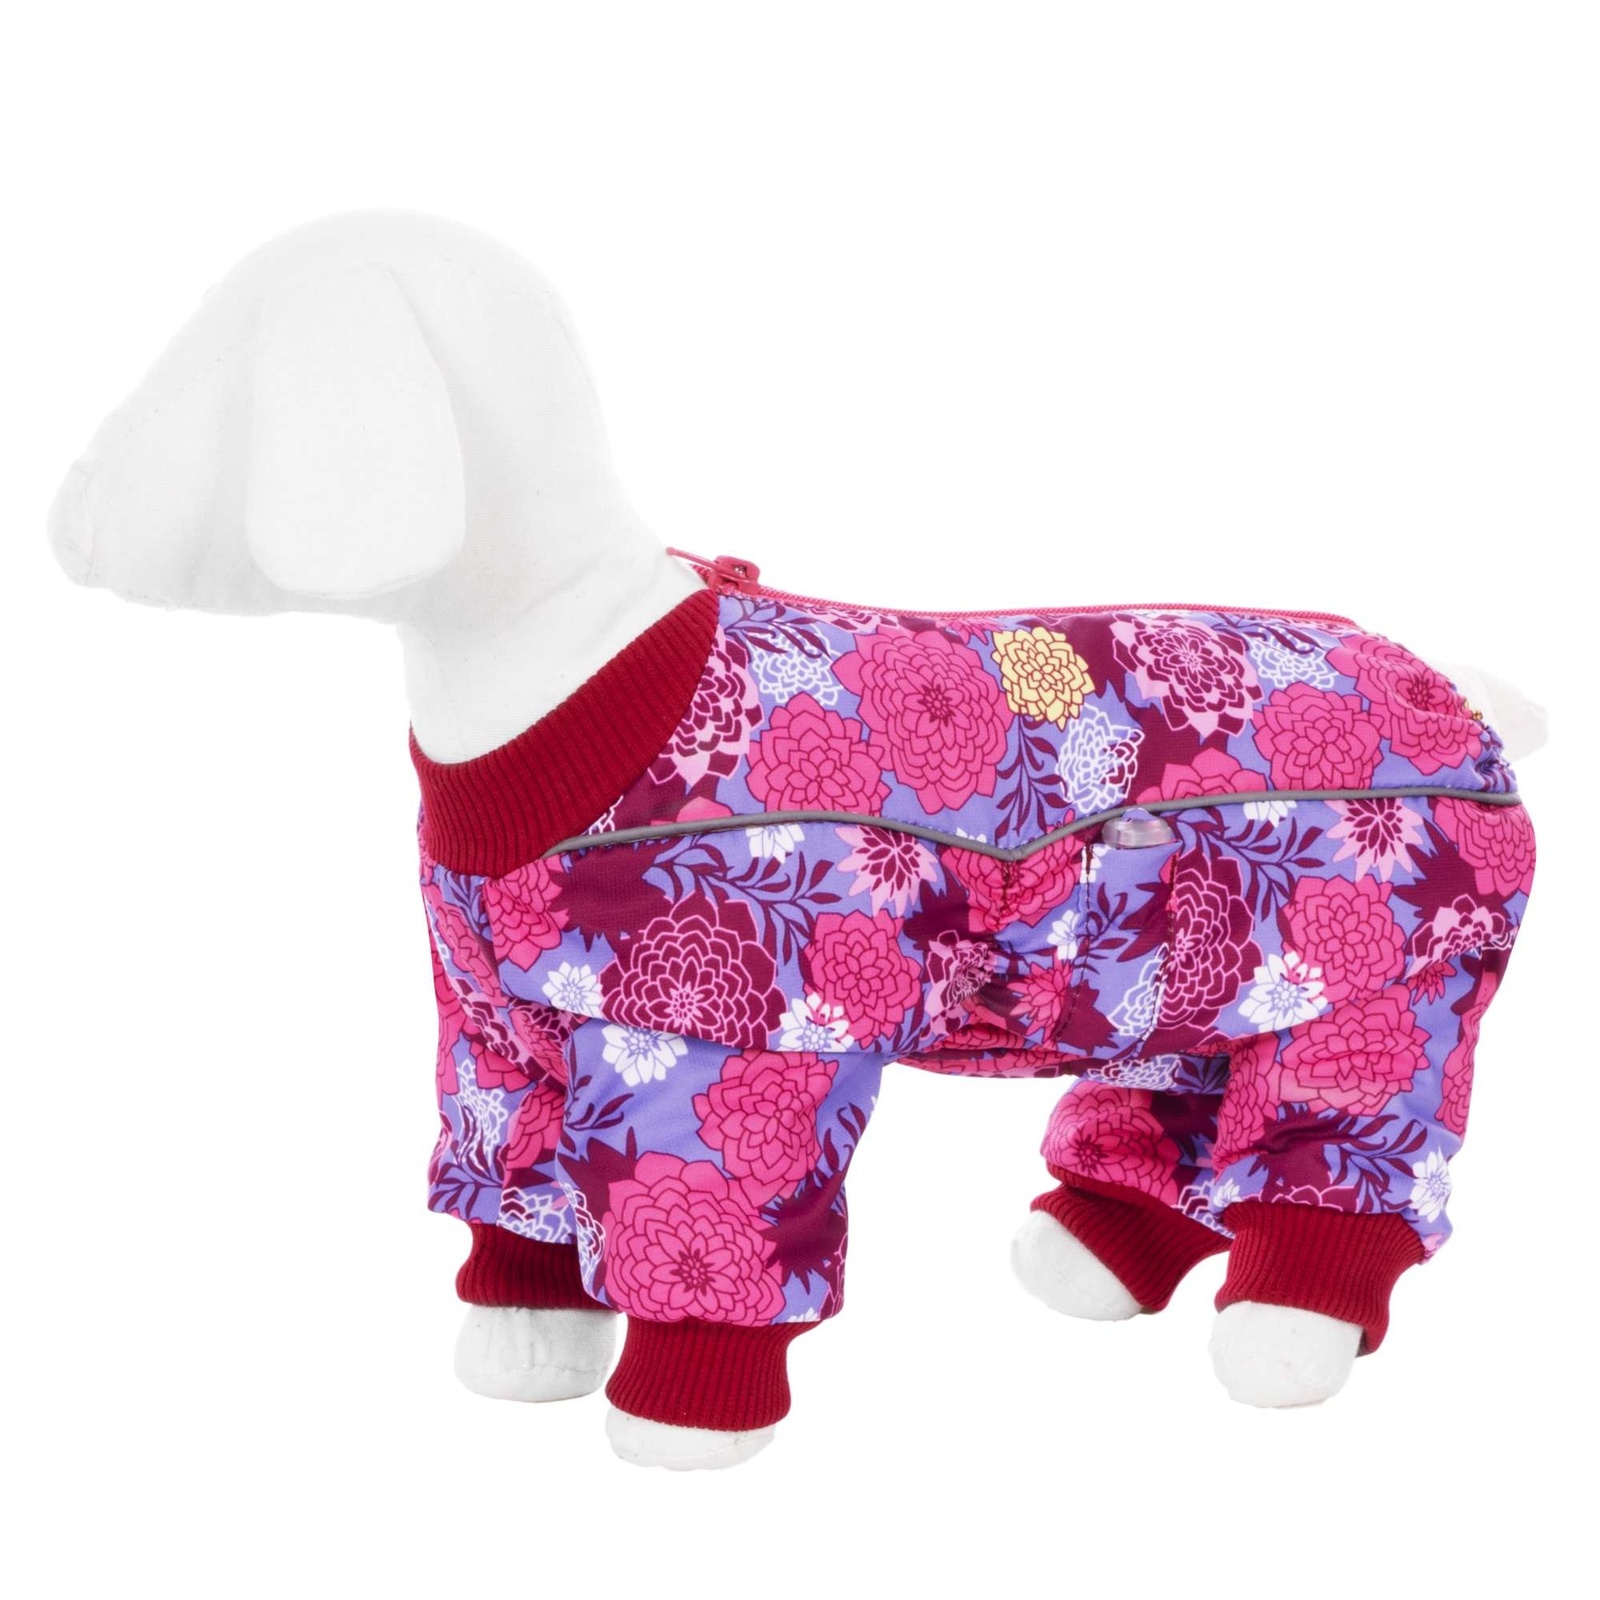 Yami-Yami одежда Yami-Yami одежда комбинезон для собак малых пород, на флисе с рисунком цветы (100 г) yami yami одежда yami yami одежда комбинезон для собак малых пород фиолетовый на флисе м 2